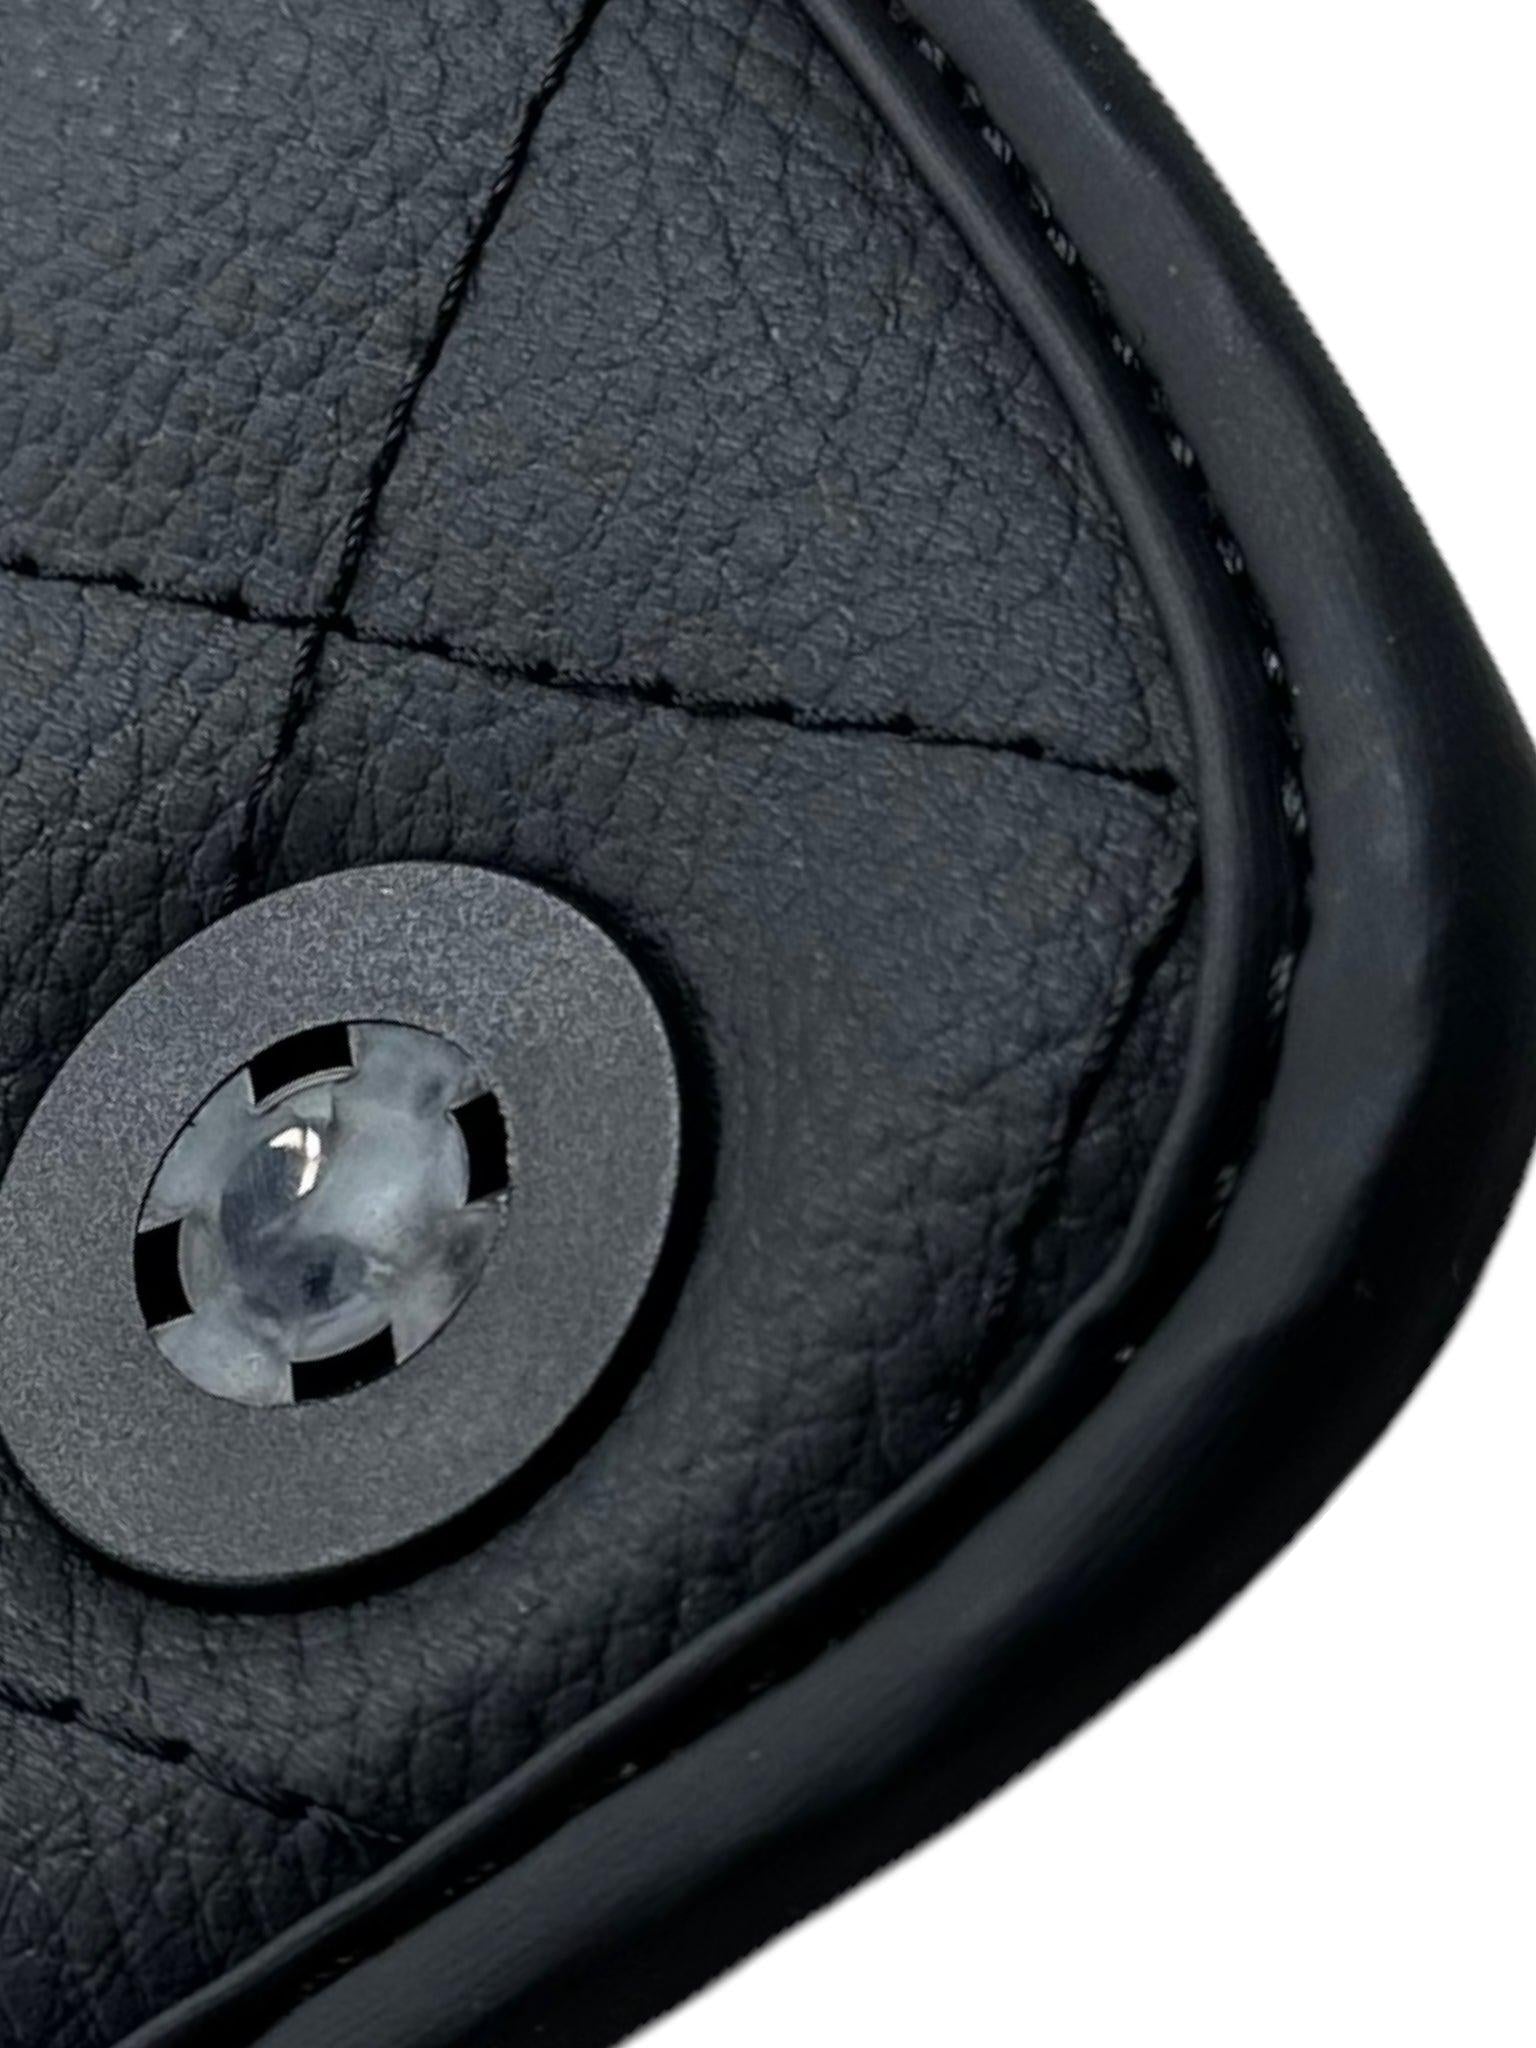 Leather Floor Mats for Ferrari California T (2008-2014) Black Sewing ER56 Design